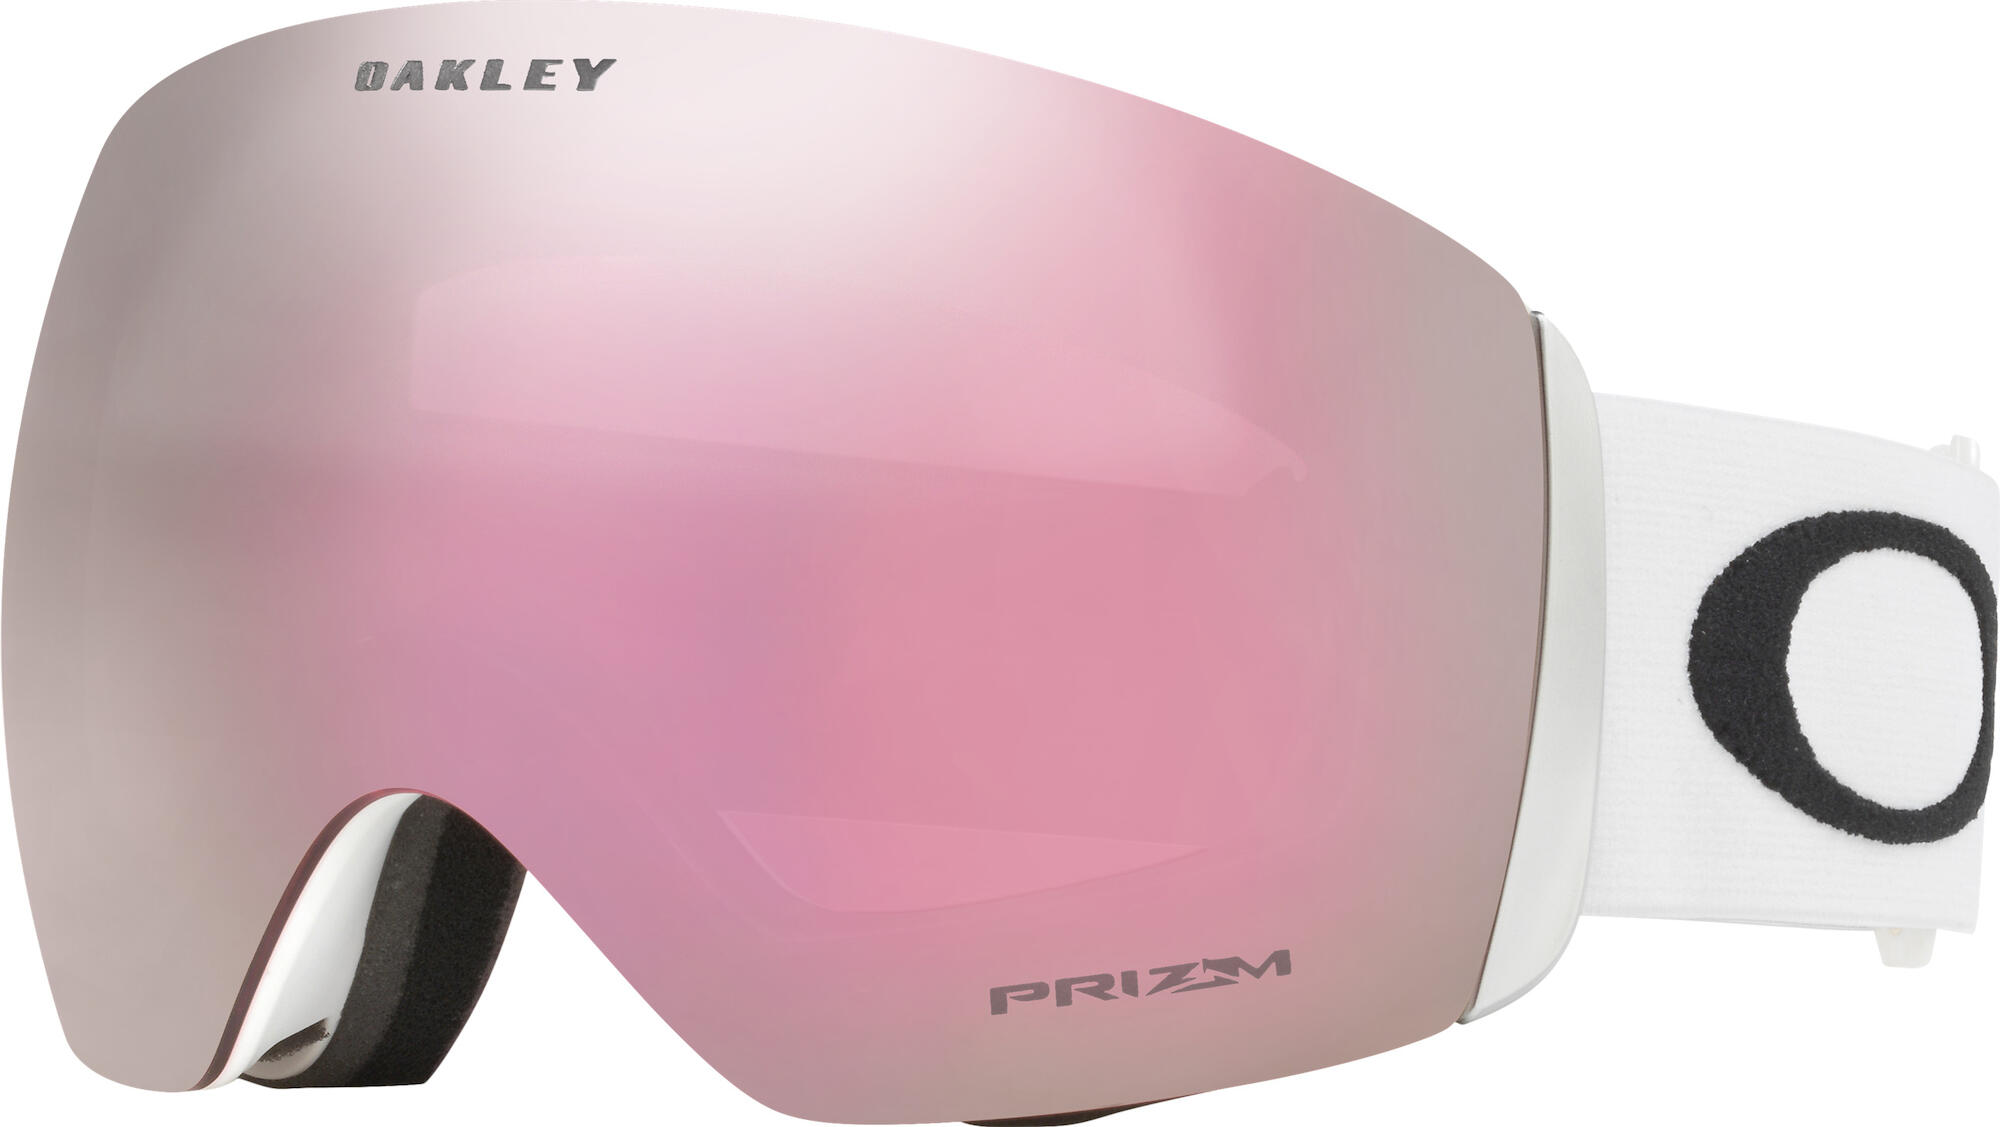 Oakley Flight Deck matte white - prizm hi pink iridium